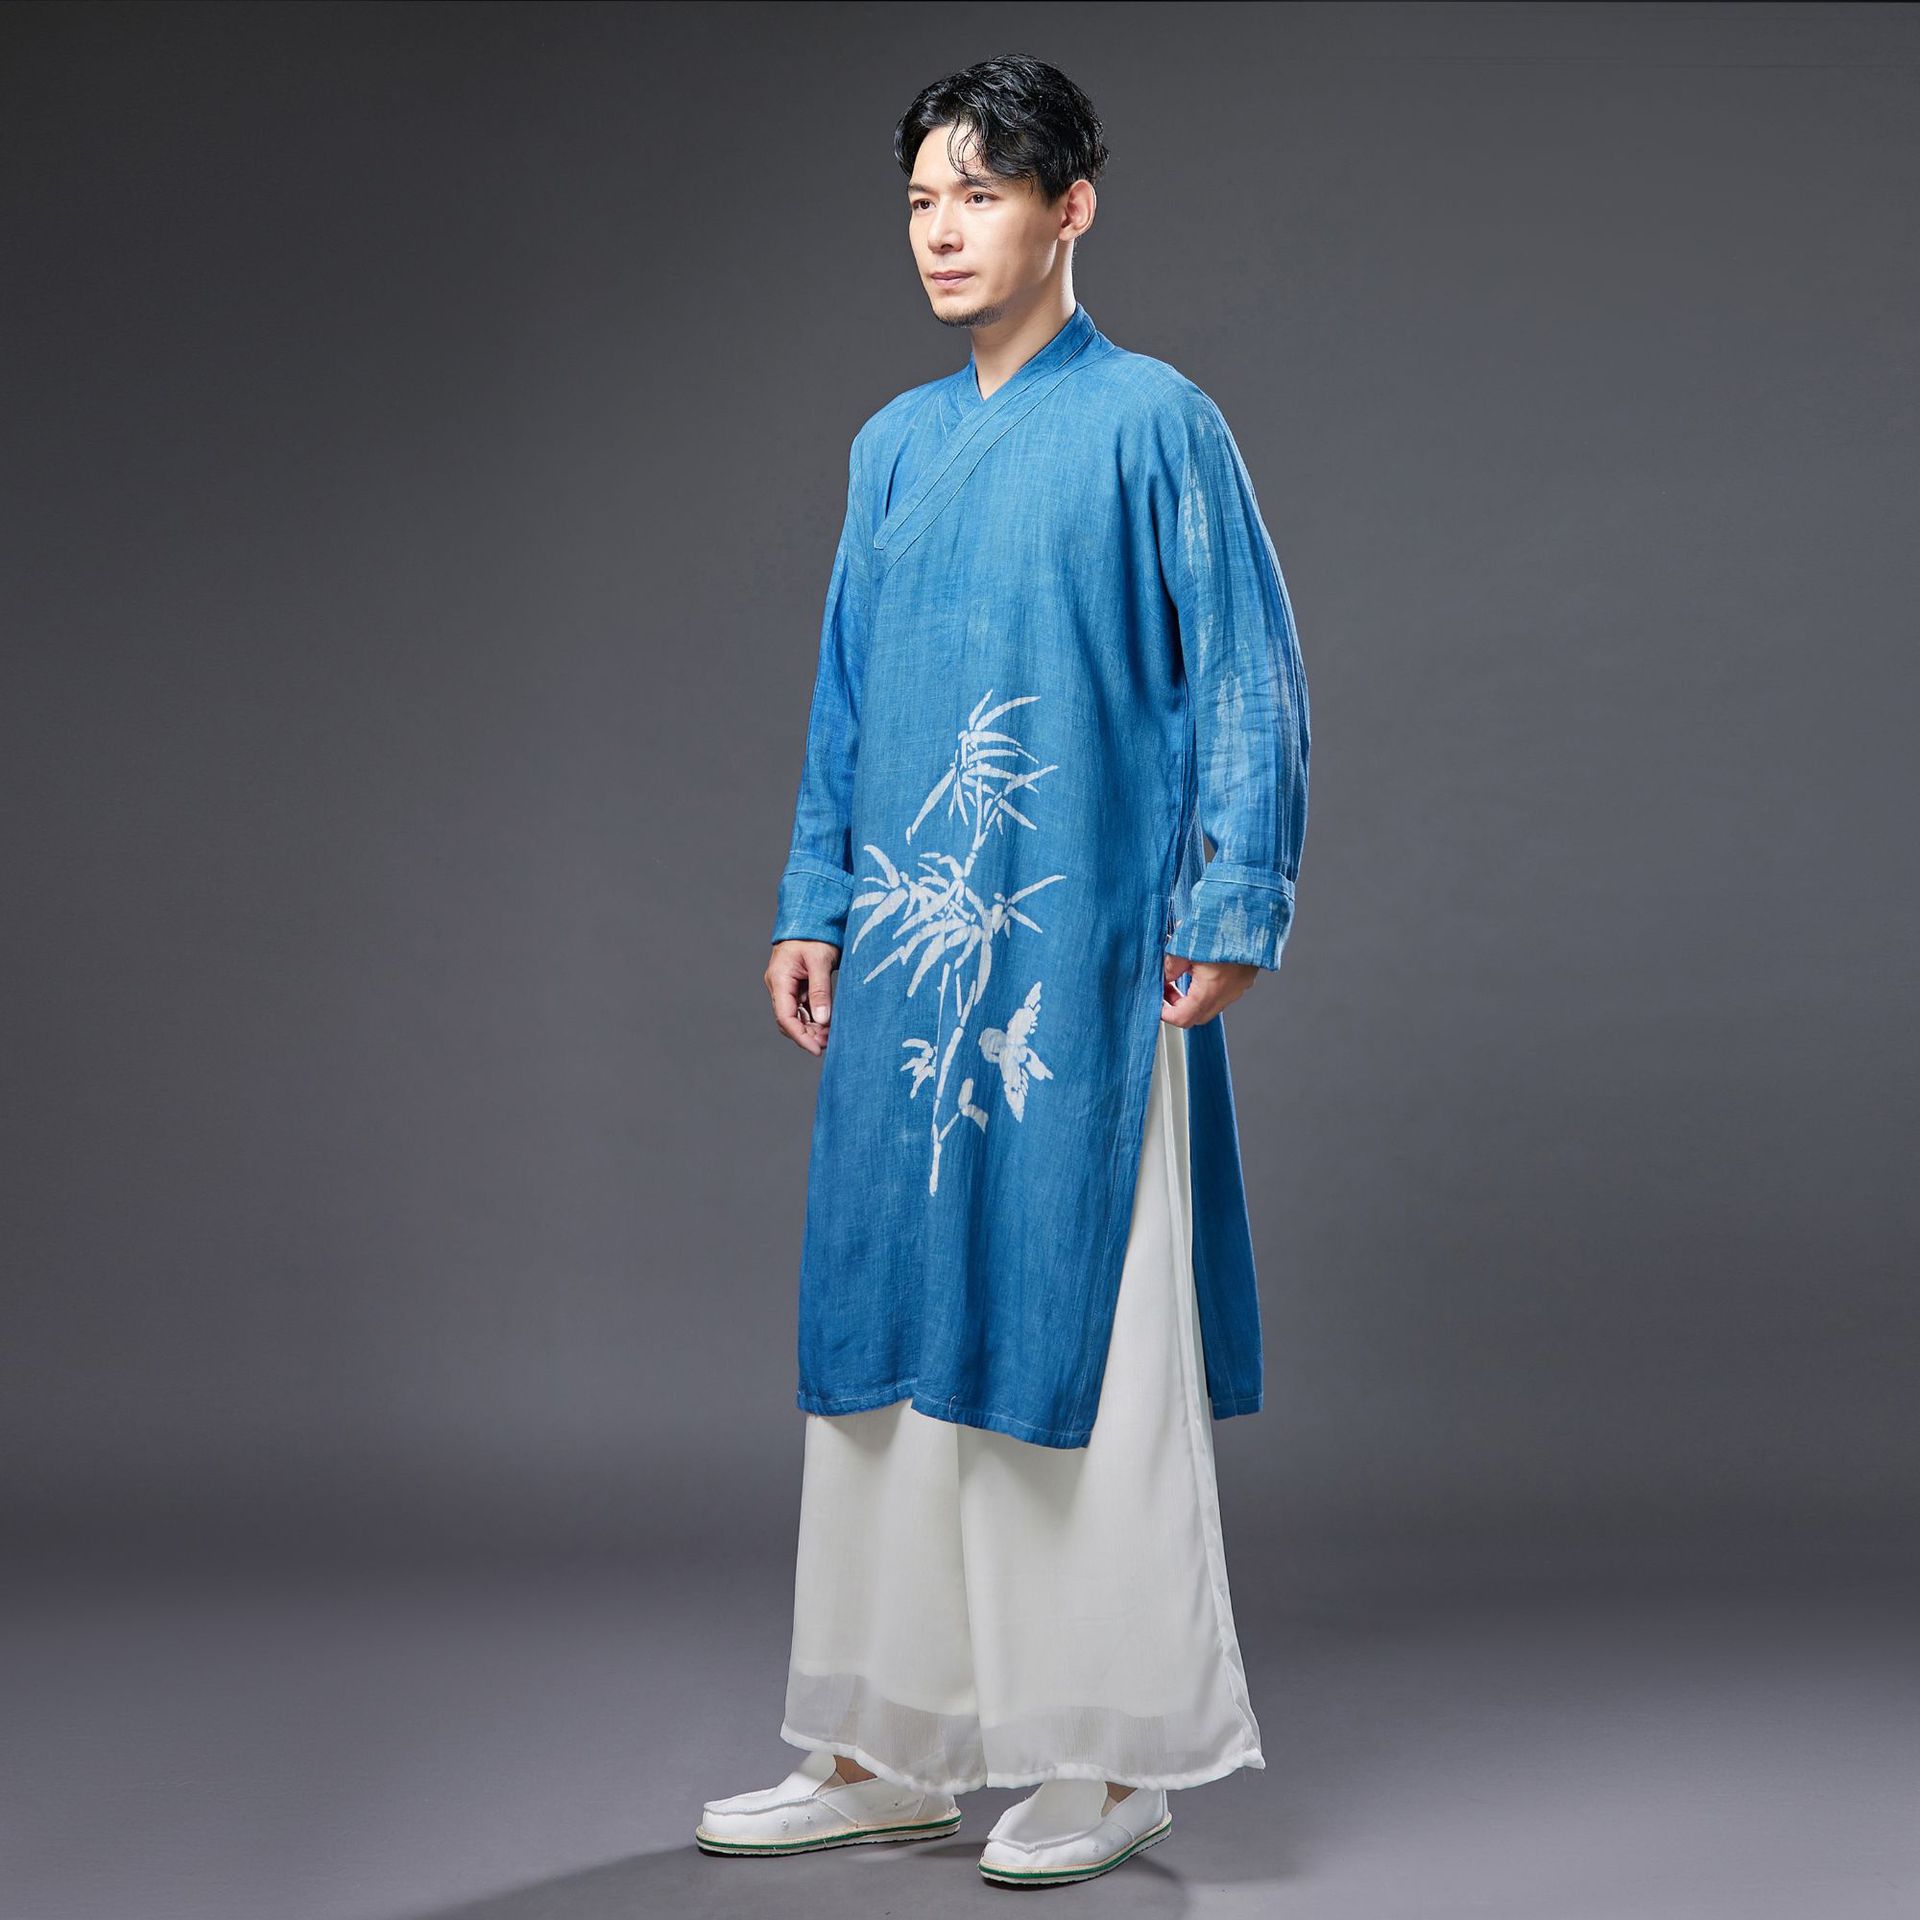 남자 무술 쿵푸 태극권 셔츠 코튼 린넨 중국 전통 느슨한 운동복, 조깅 피트니스 캐주얼 명상 셔츠